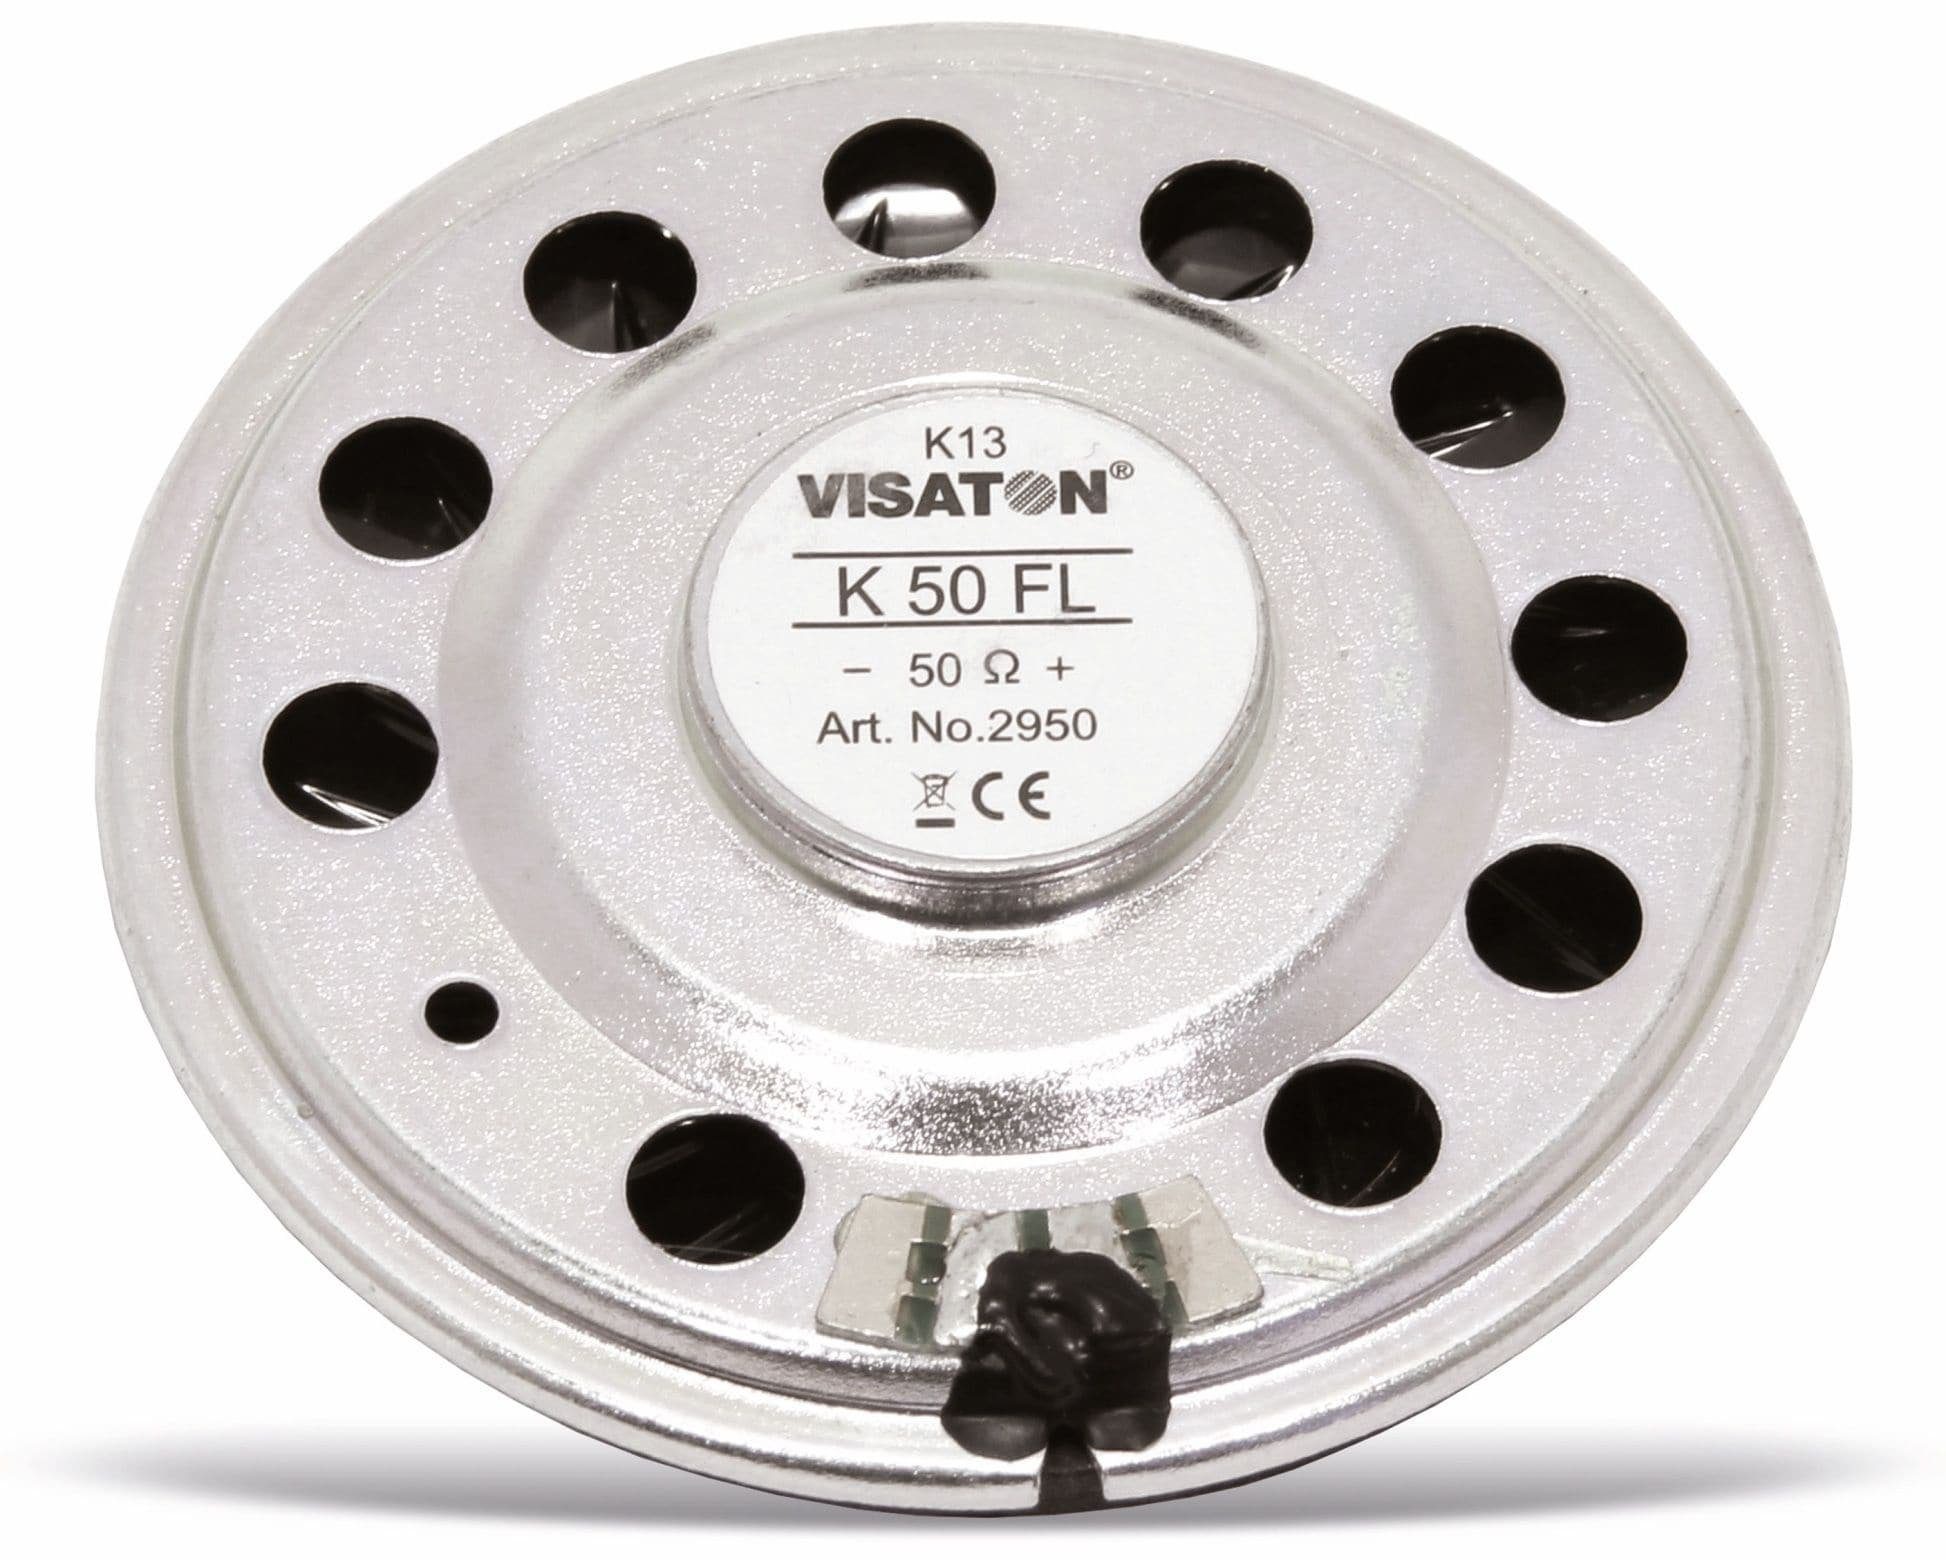 Visaton 50 VISATON Lautsprecher IP65 Ohm, FL, 50 Lautsprecher K